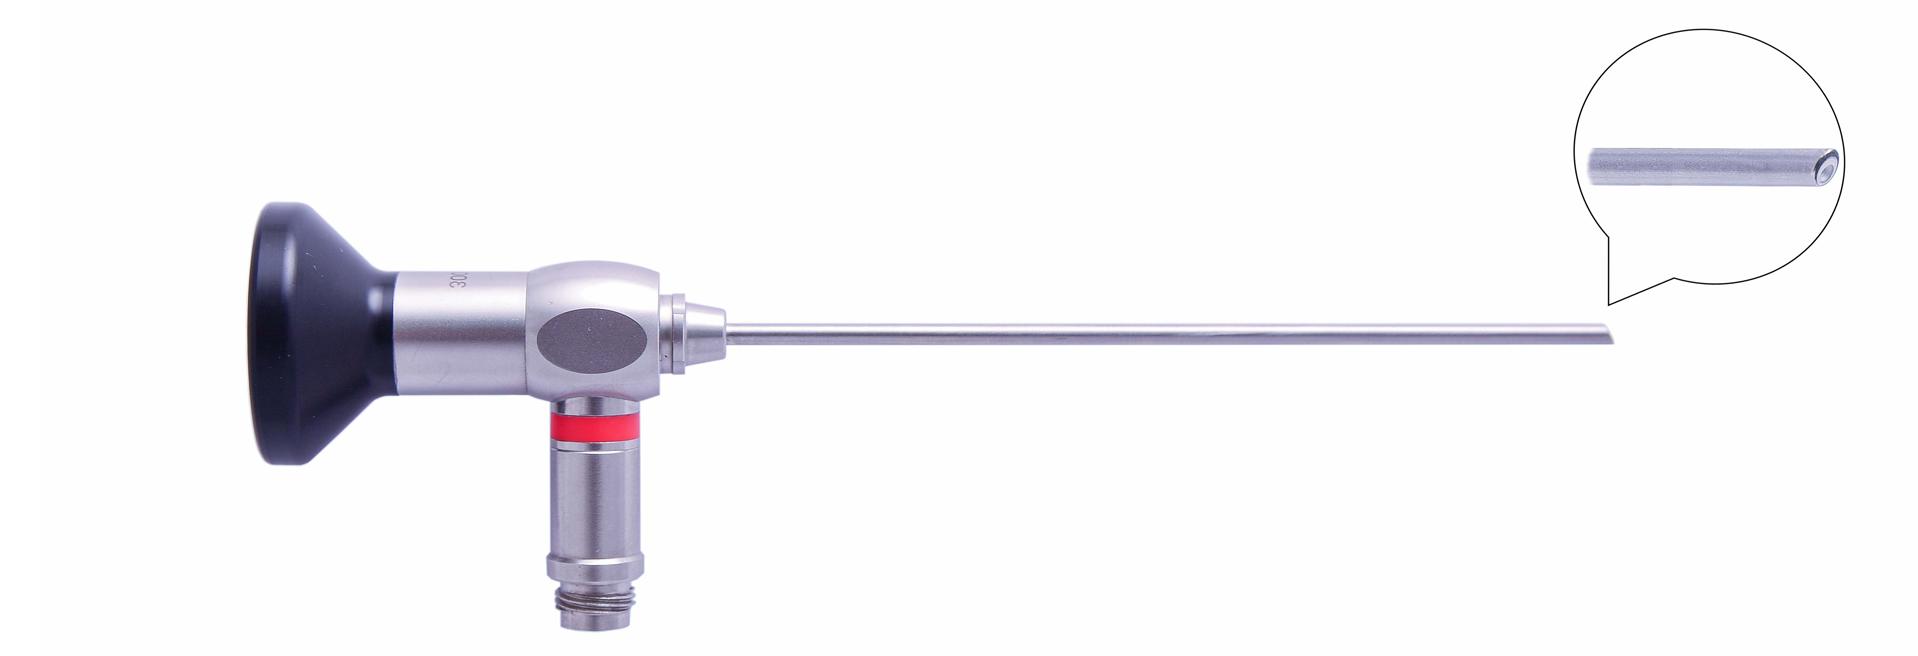 Трубка оптическая (артроскопическая, риноскопическая) ТОАР-014 диам. 4 мм, с углом наблюдения 30 гр. (дл. 110 мм)